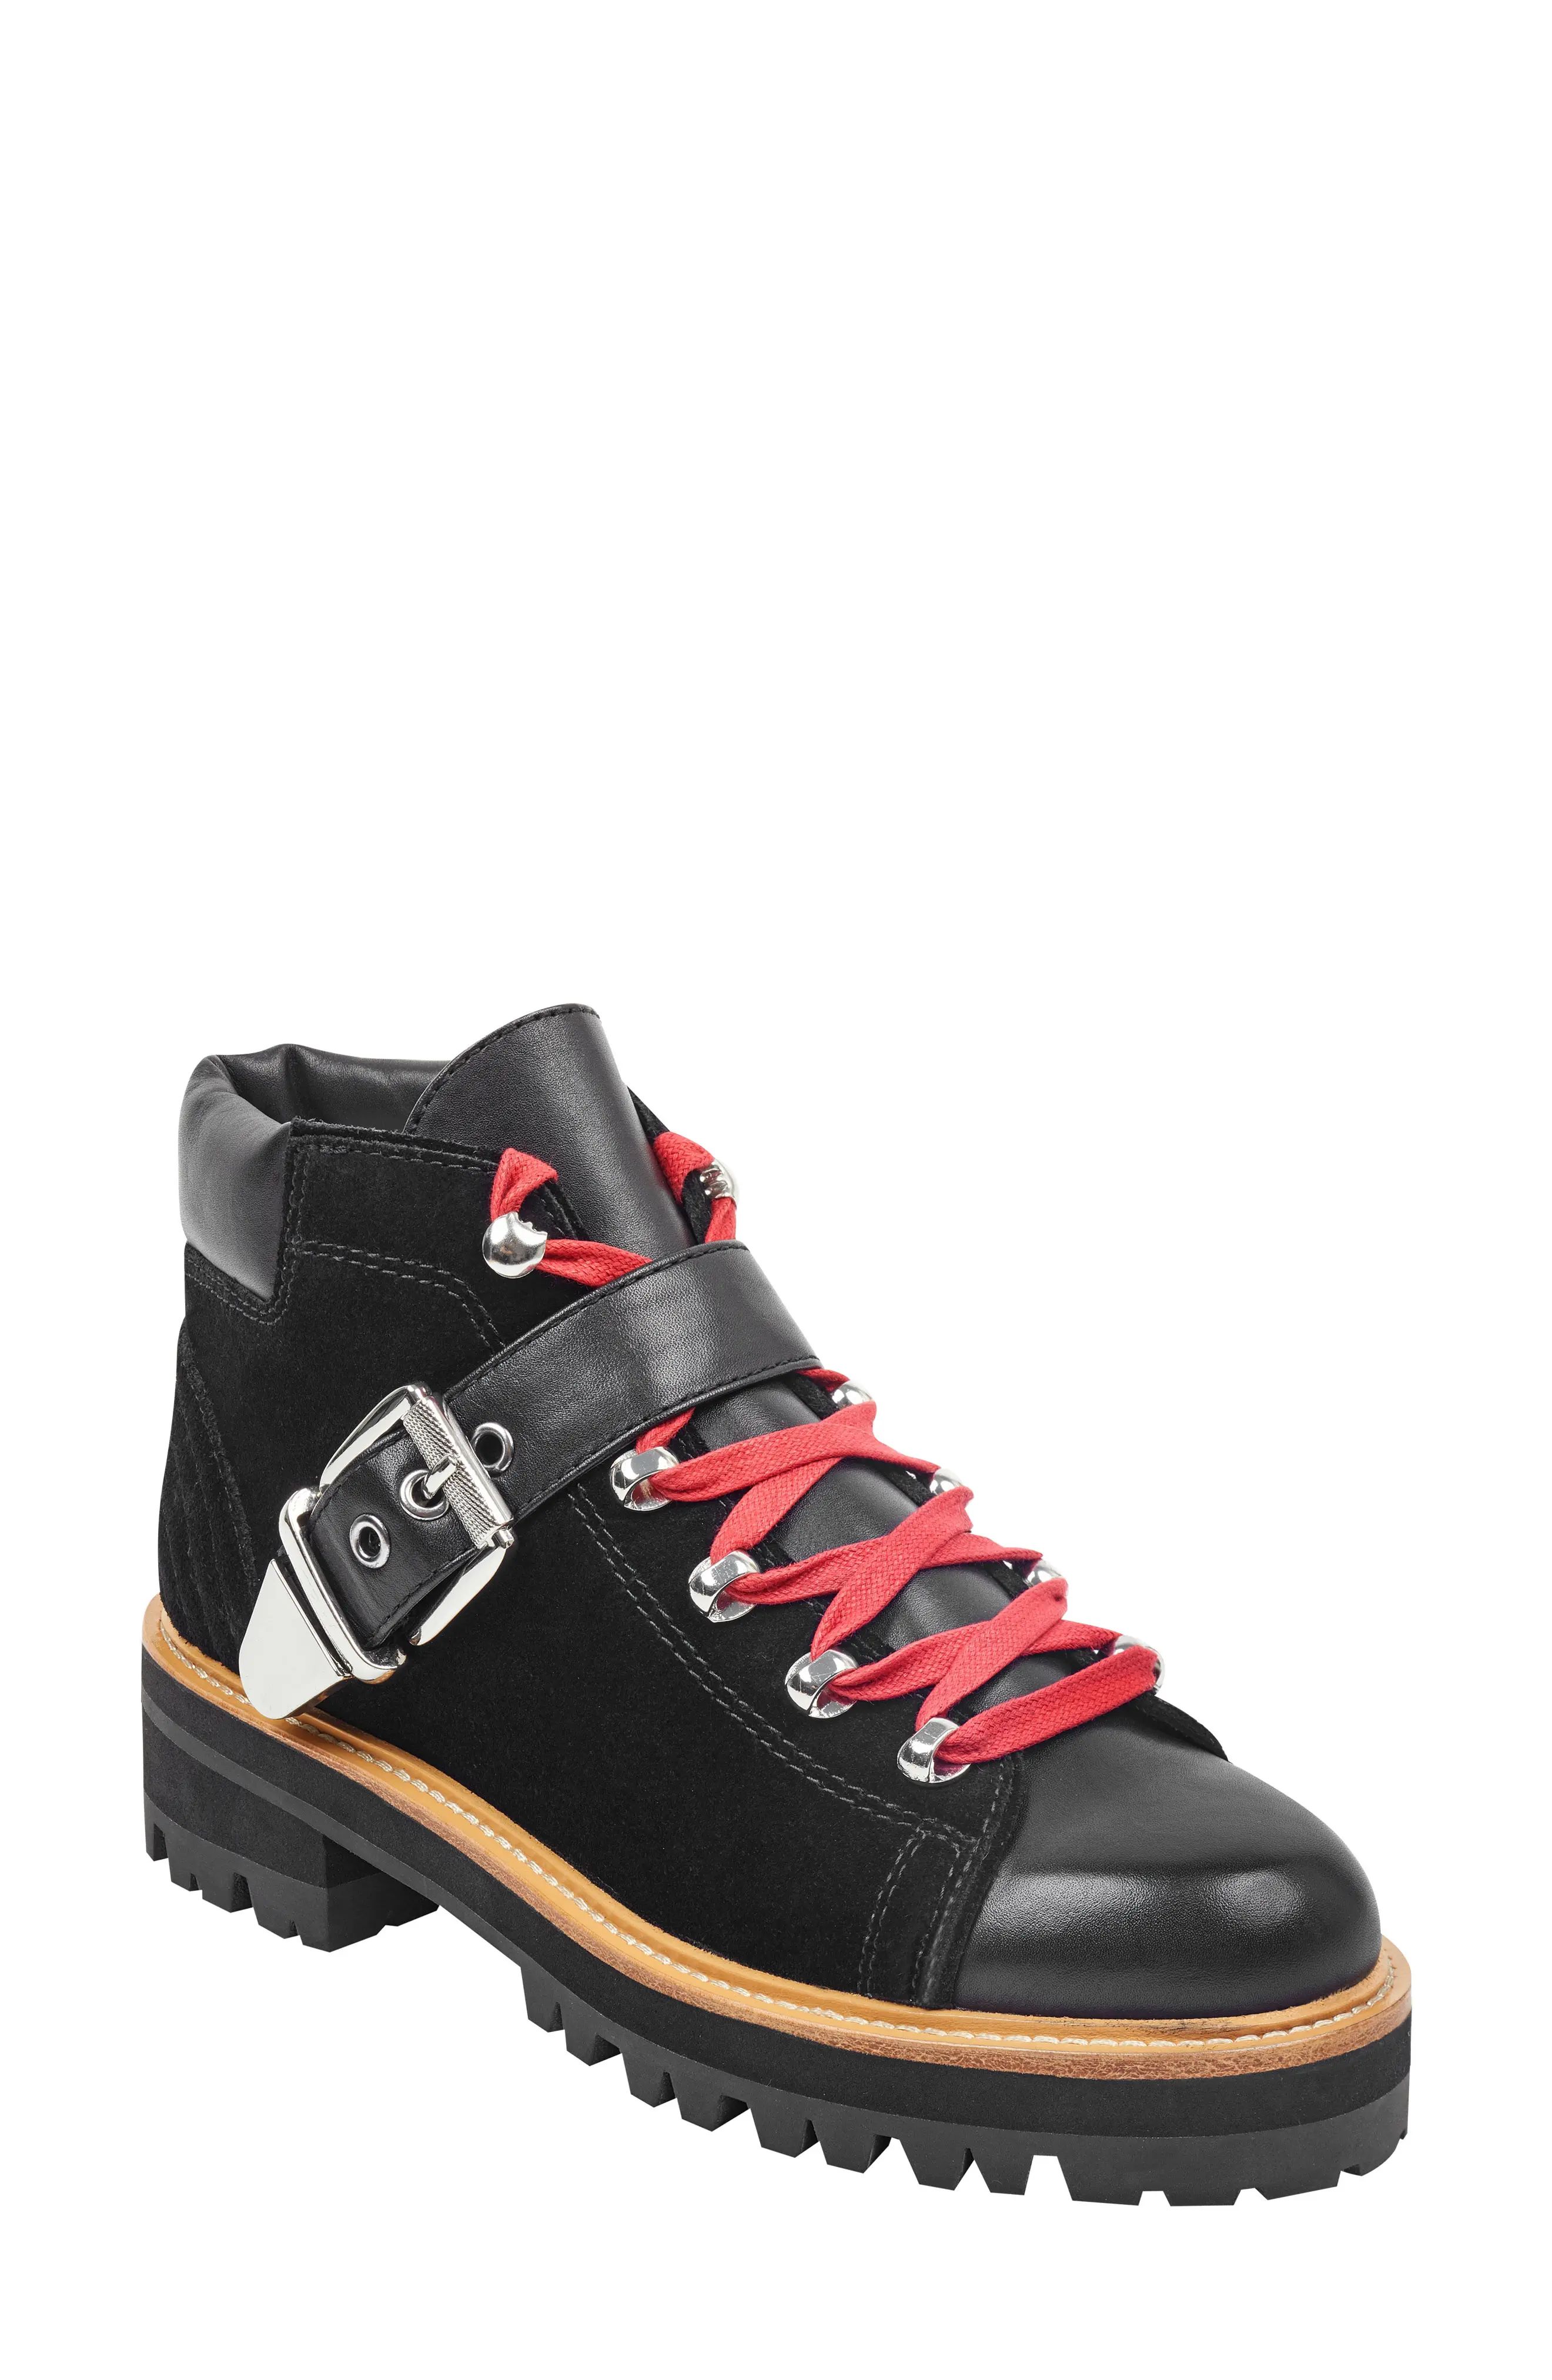 Women's Marc Fisher Ltd Indre Platform Boot, Size 5 M - Black | Nordstrom